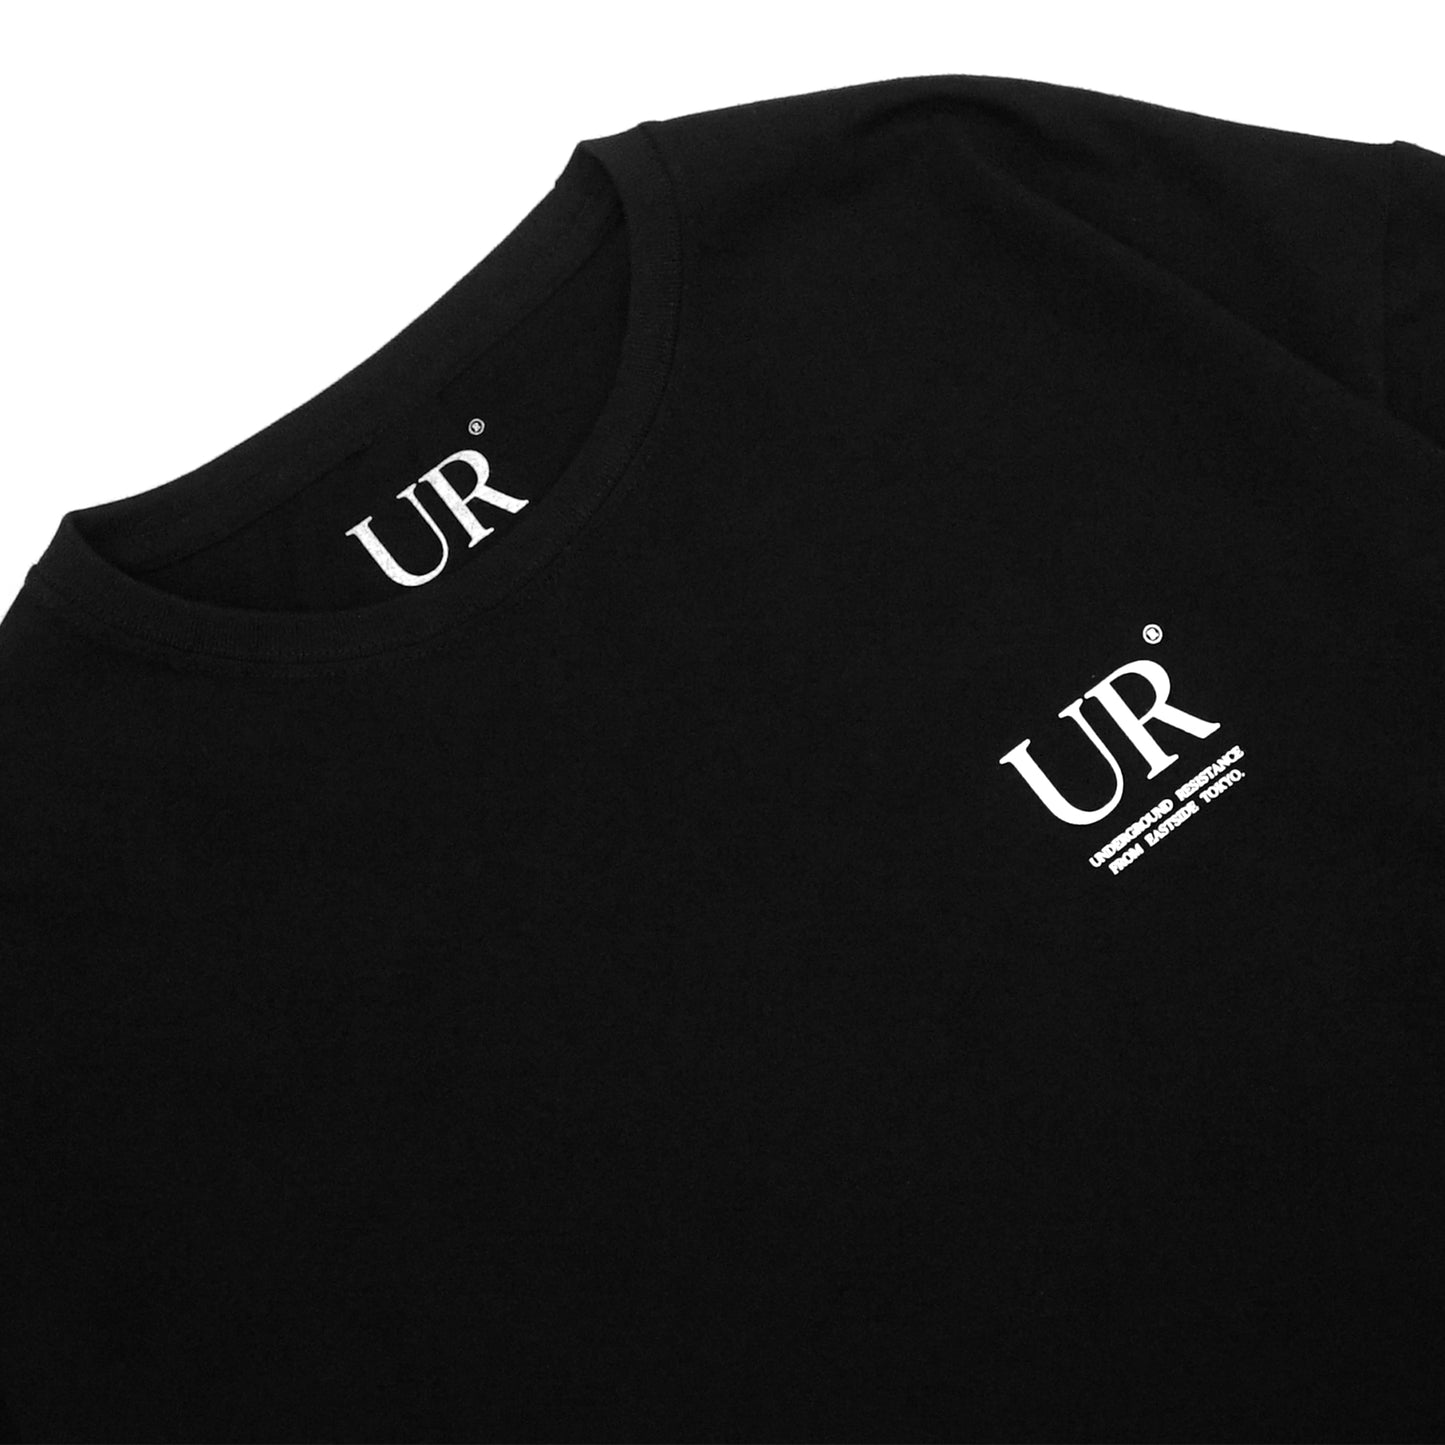 UR® - Embrace The Suck T-Shirt/Black